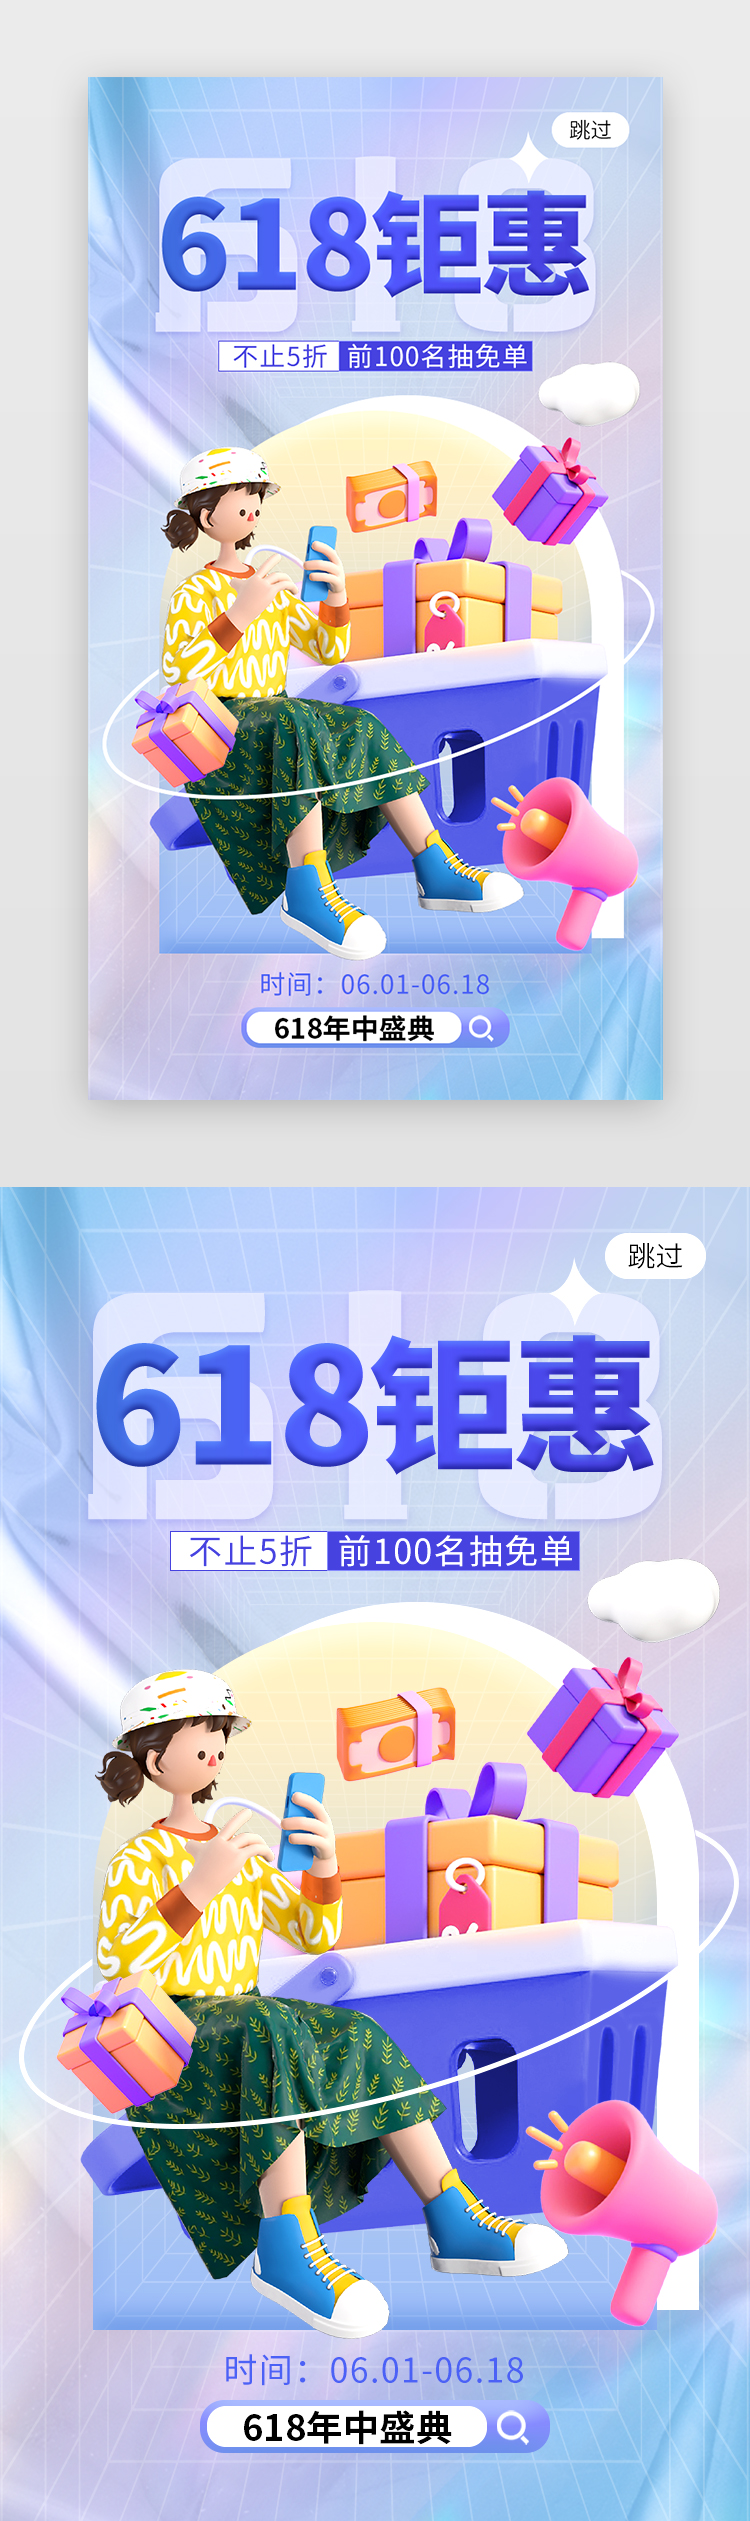 618钜惠活动app闪屏创意蓝色购物图片